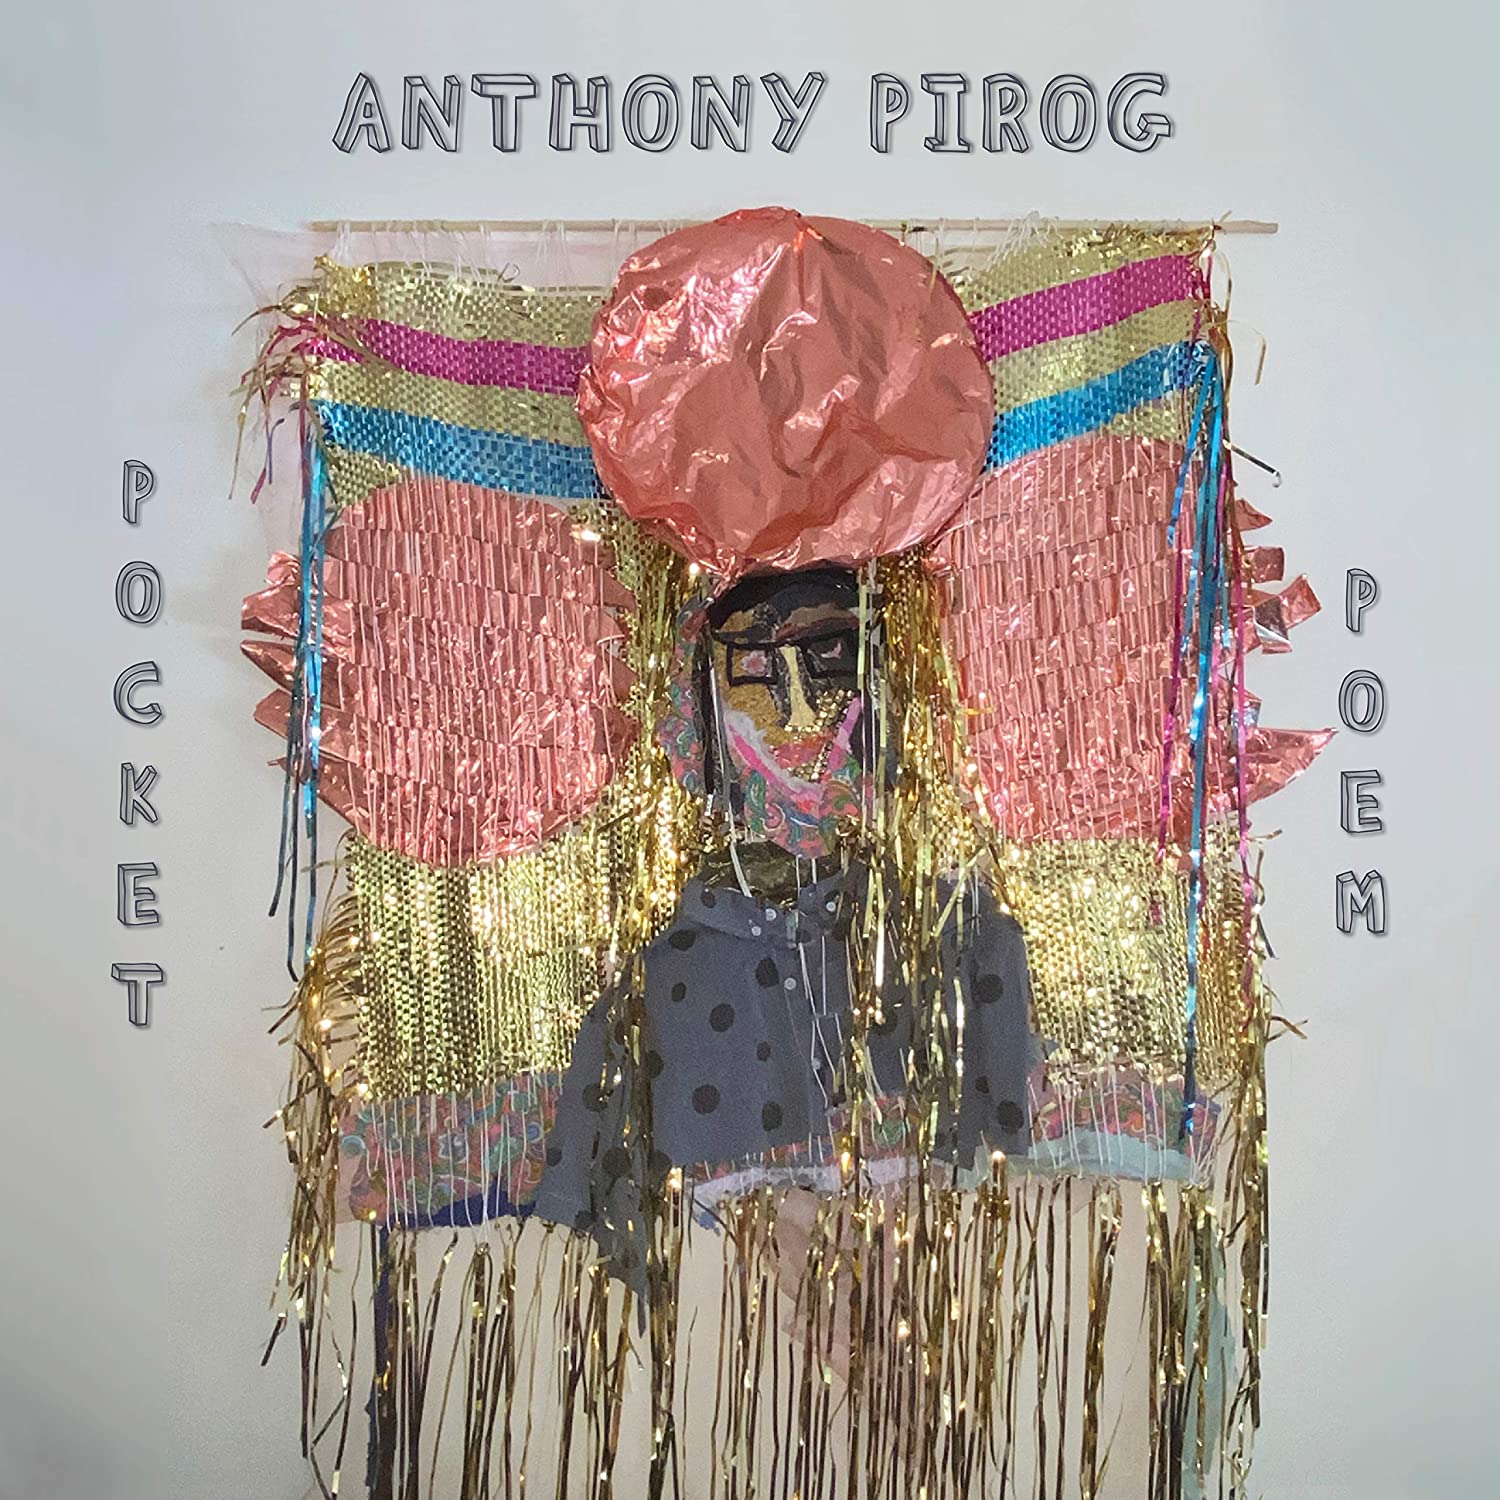 ANTHONY PIROG - Pocket Poem cover 